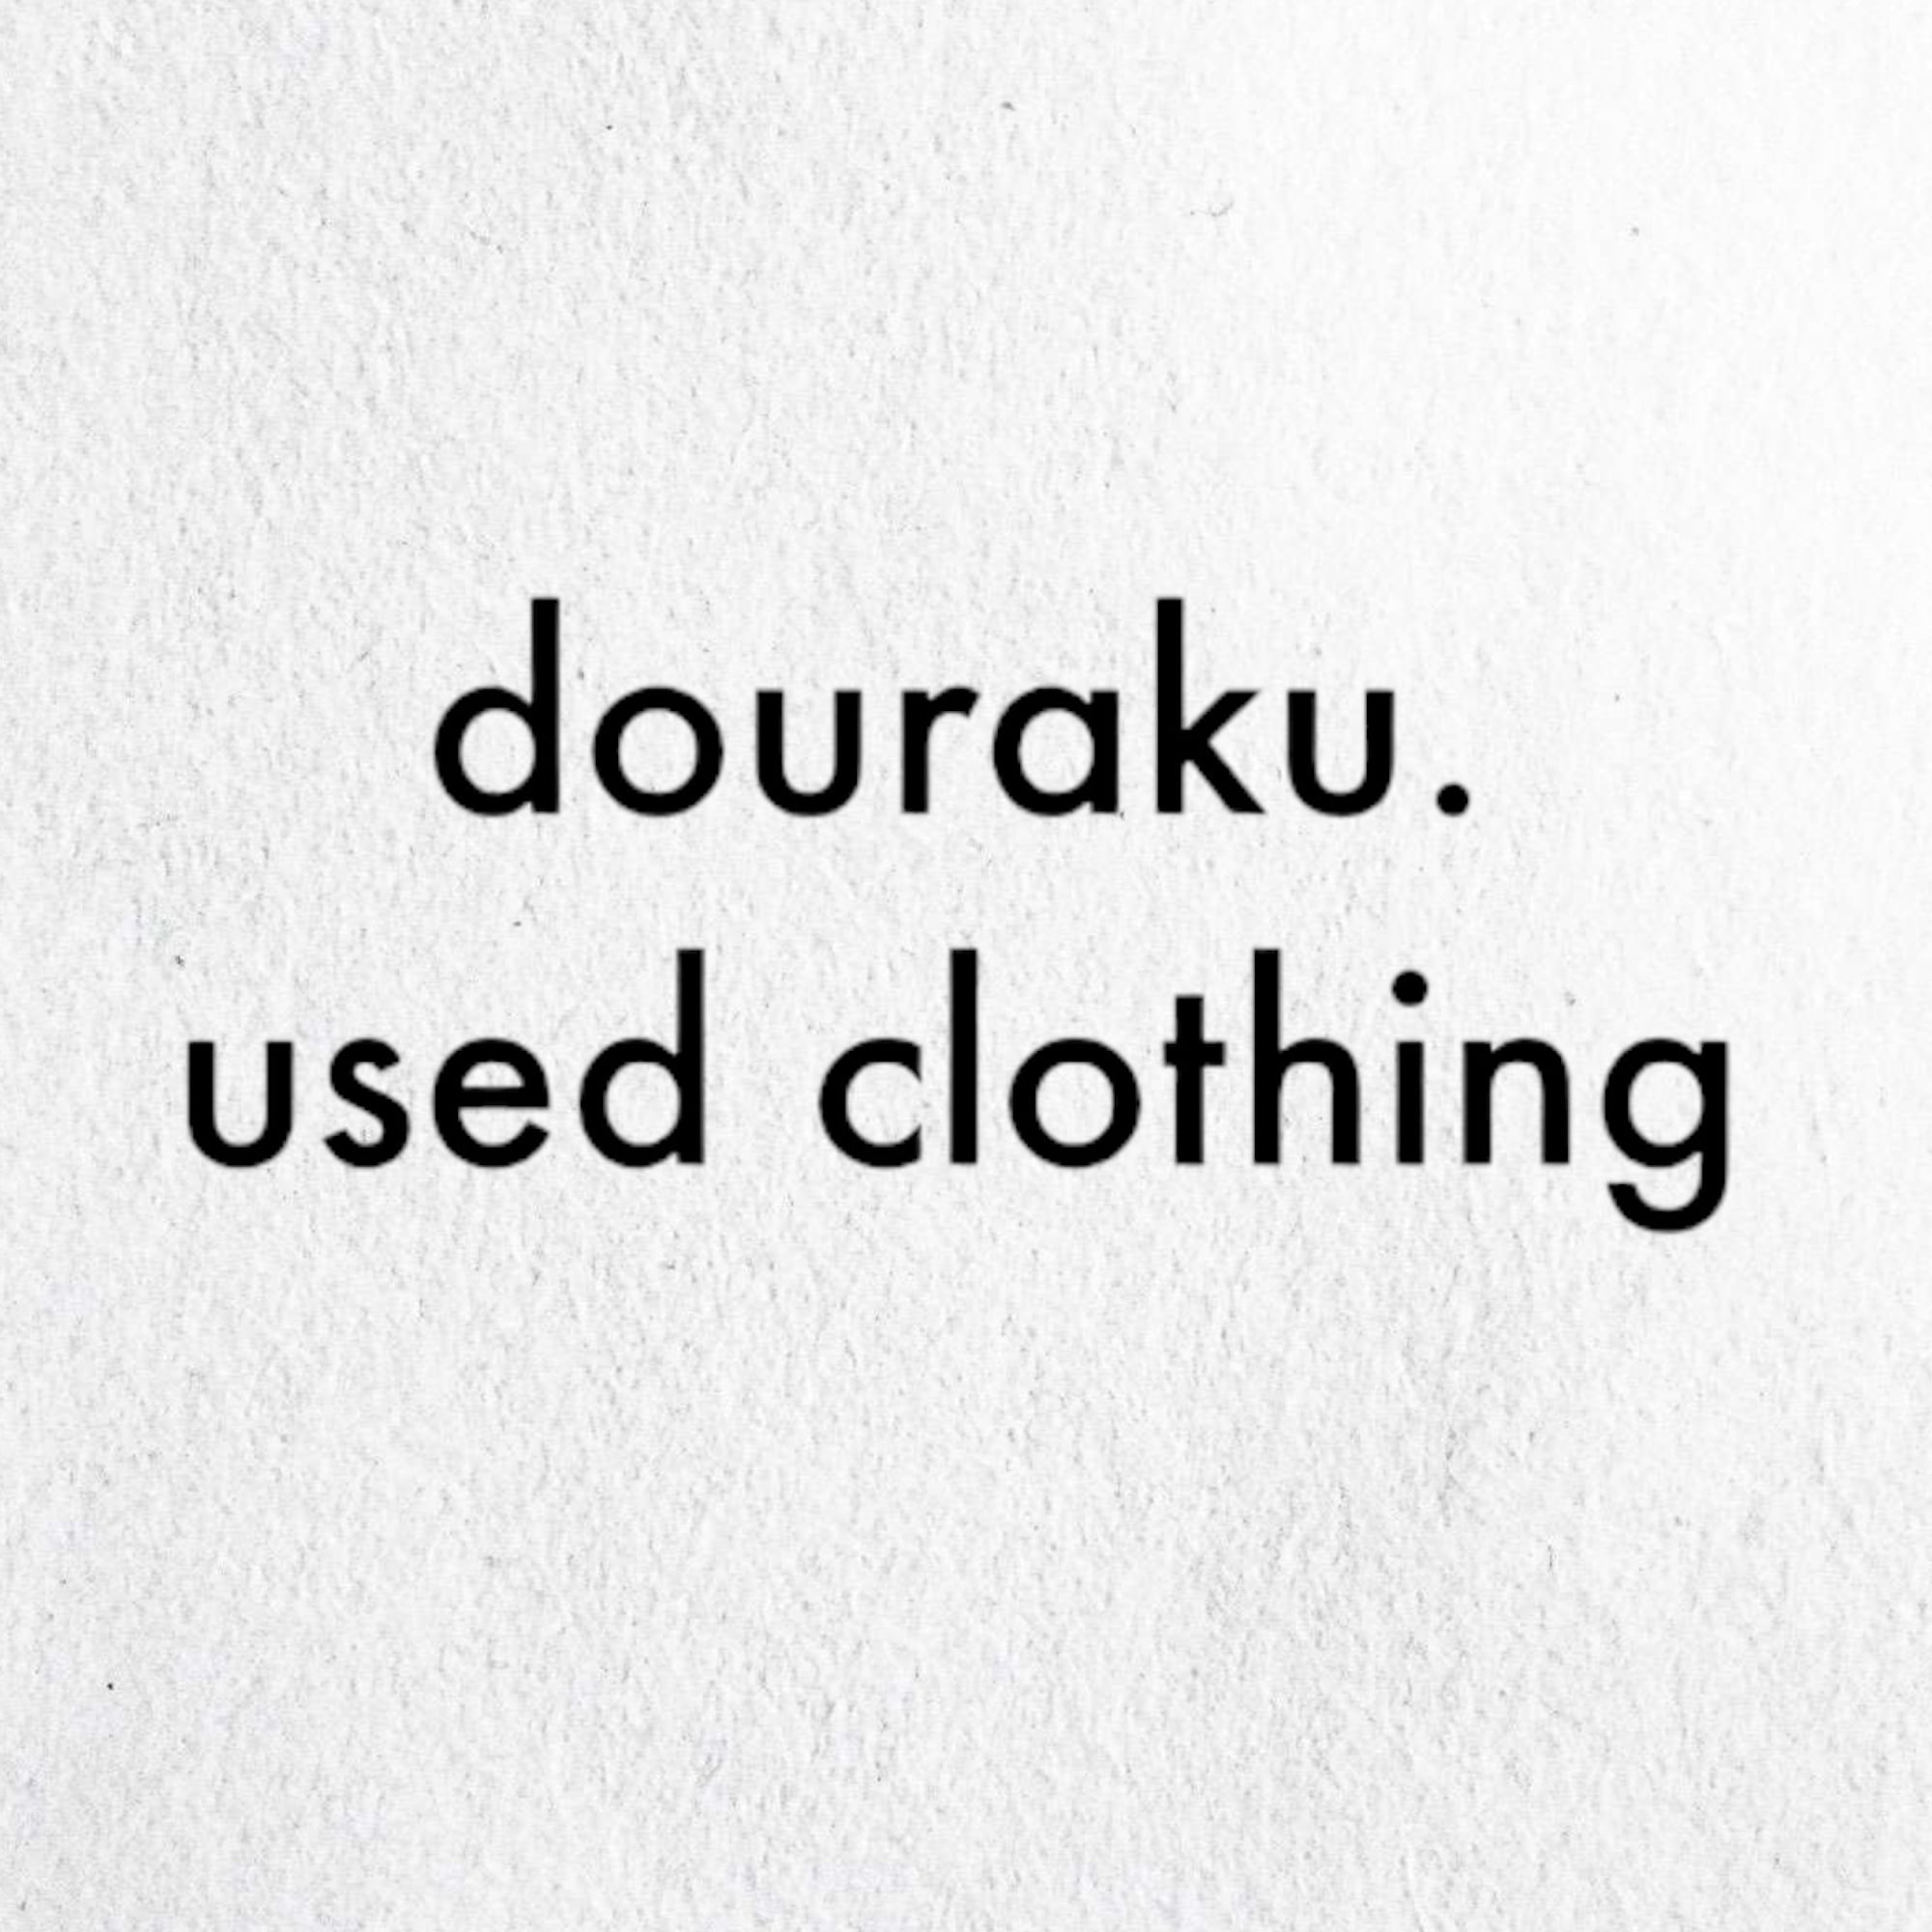 douraku. used clothing